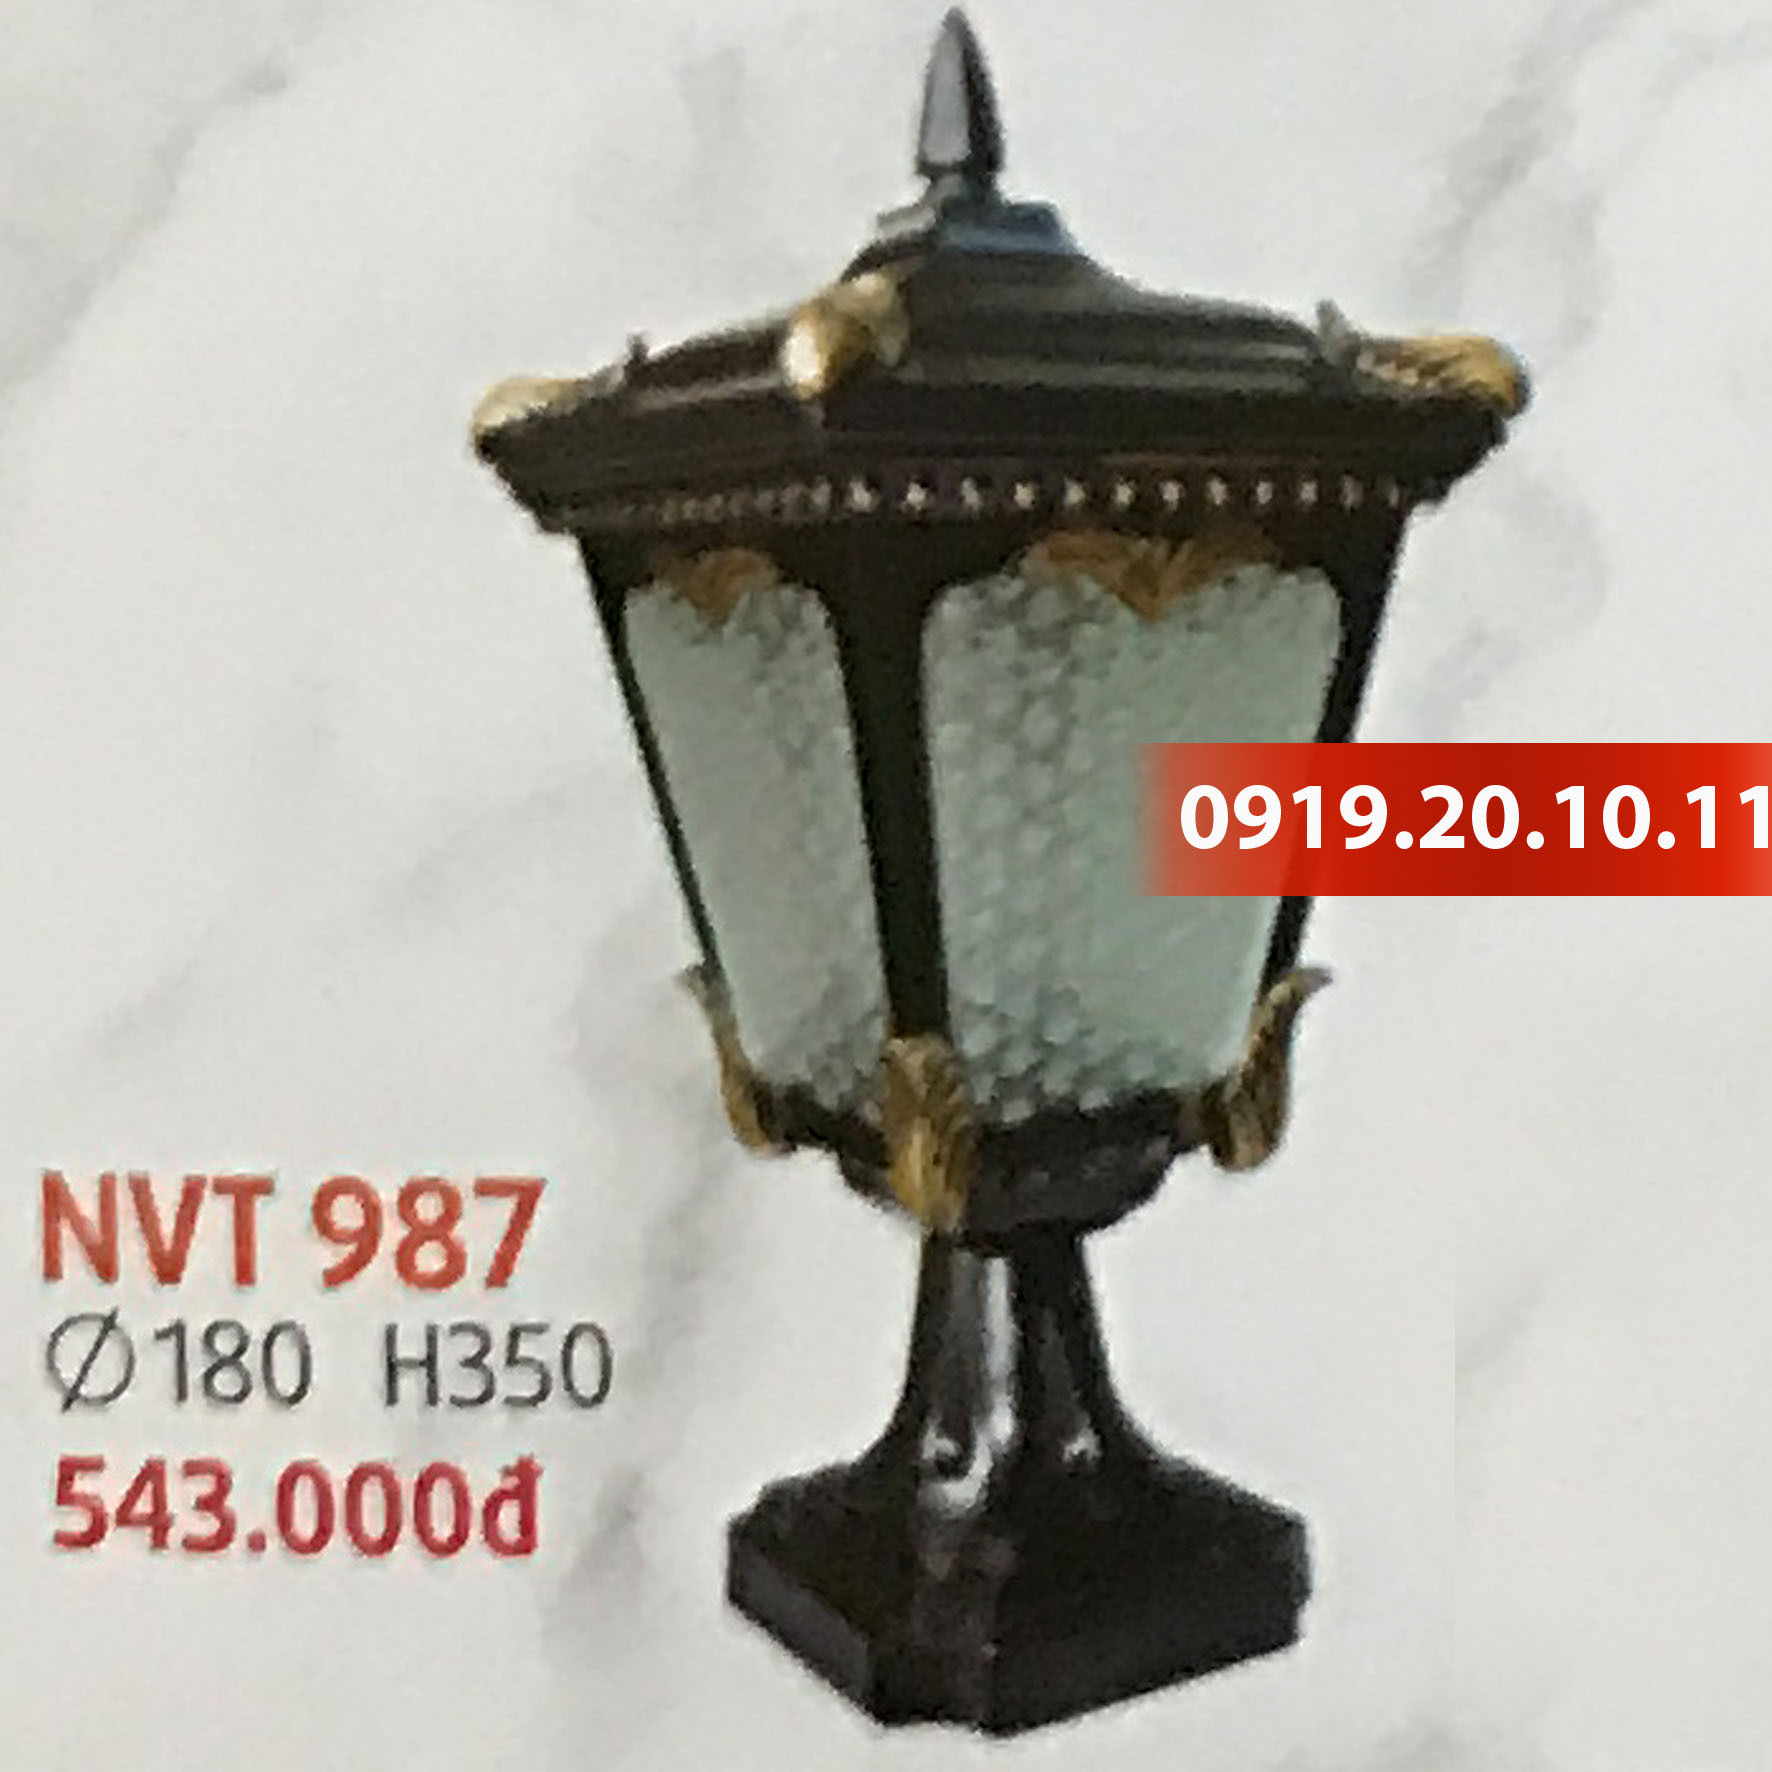 Đèn trang trí trụ cổng Netviet NVT-987